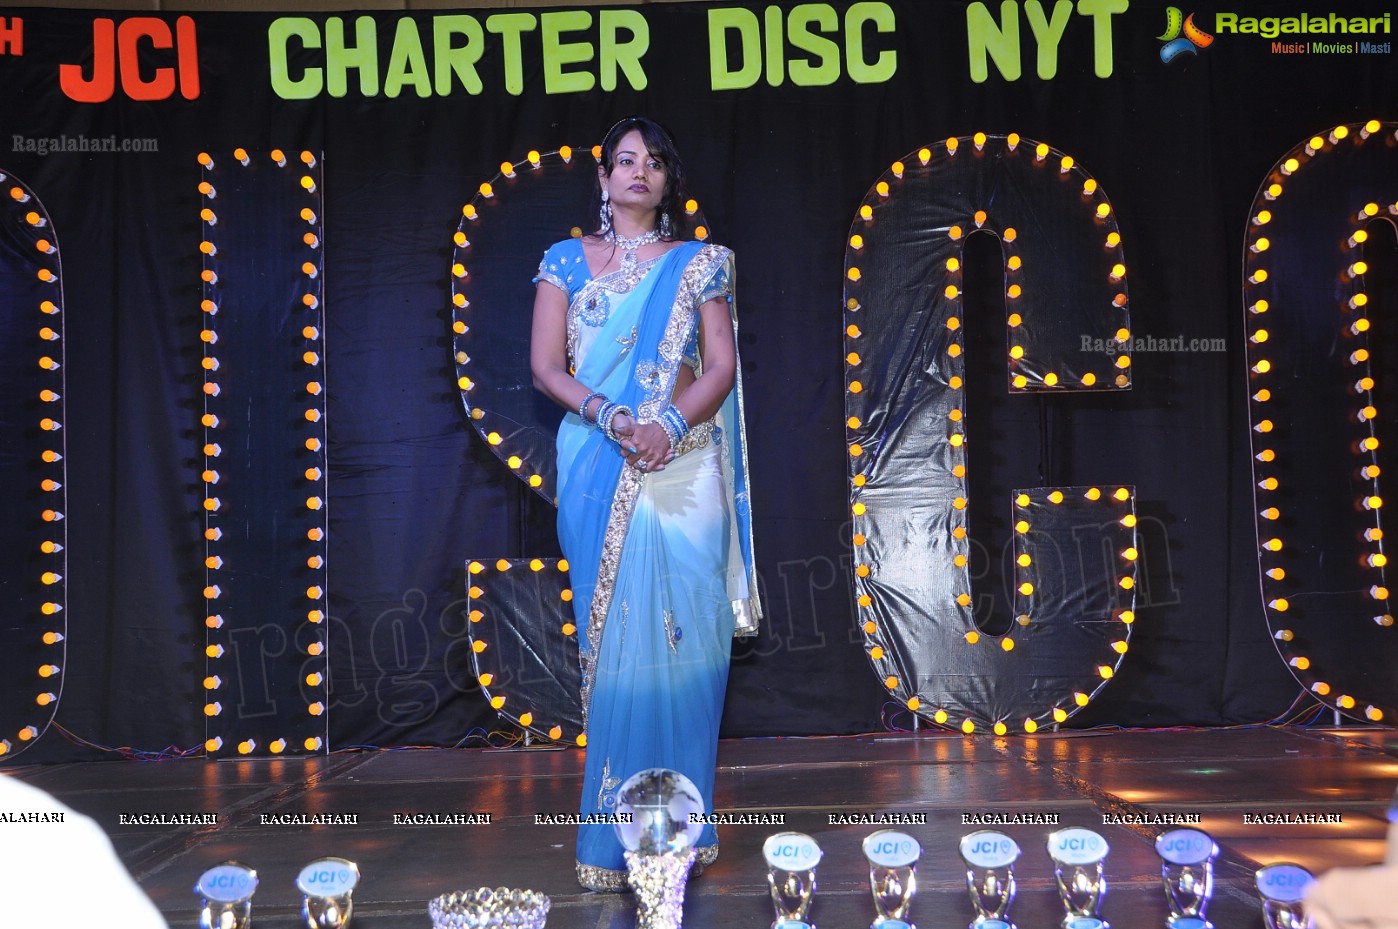 16th JCI Hyderabad Deccan Disc Nyt